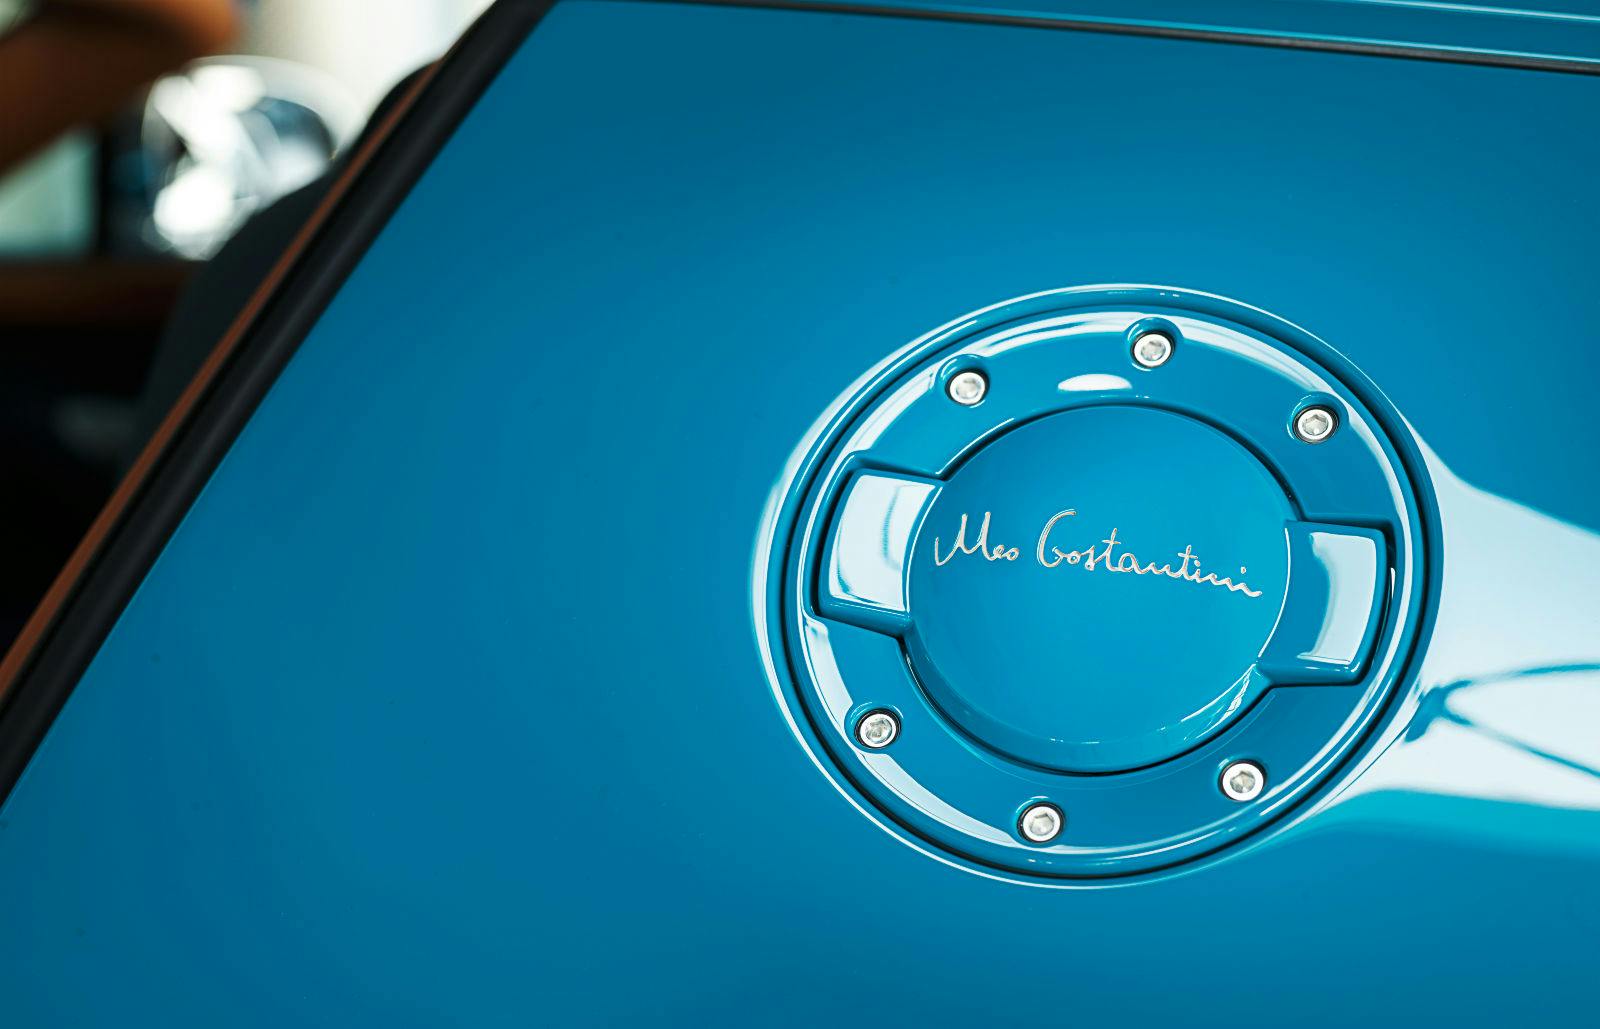 Bugatti Legend “Meo Costantini”: Costantini's signature on oil cap